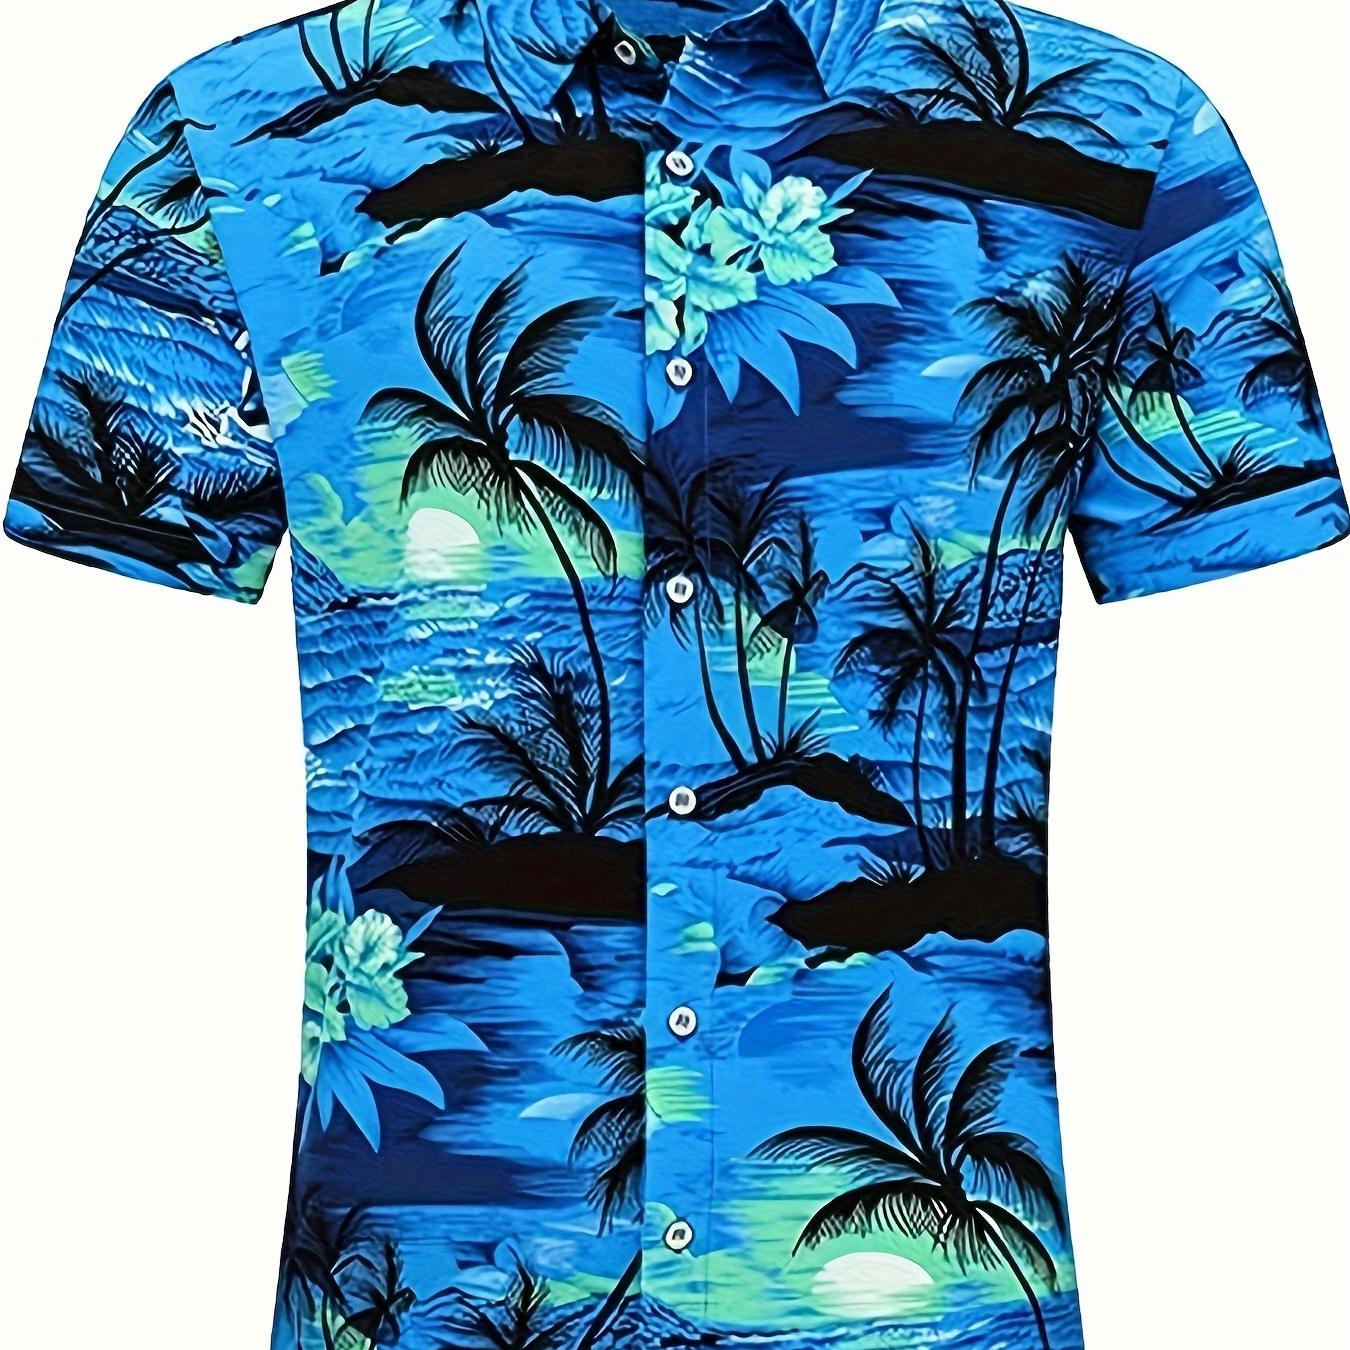 

Island Print Hawaiian Shirt, Men's Casual Button Up Short Sleeve Shirt For Summer Beach Vacation Resort